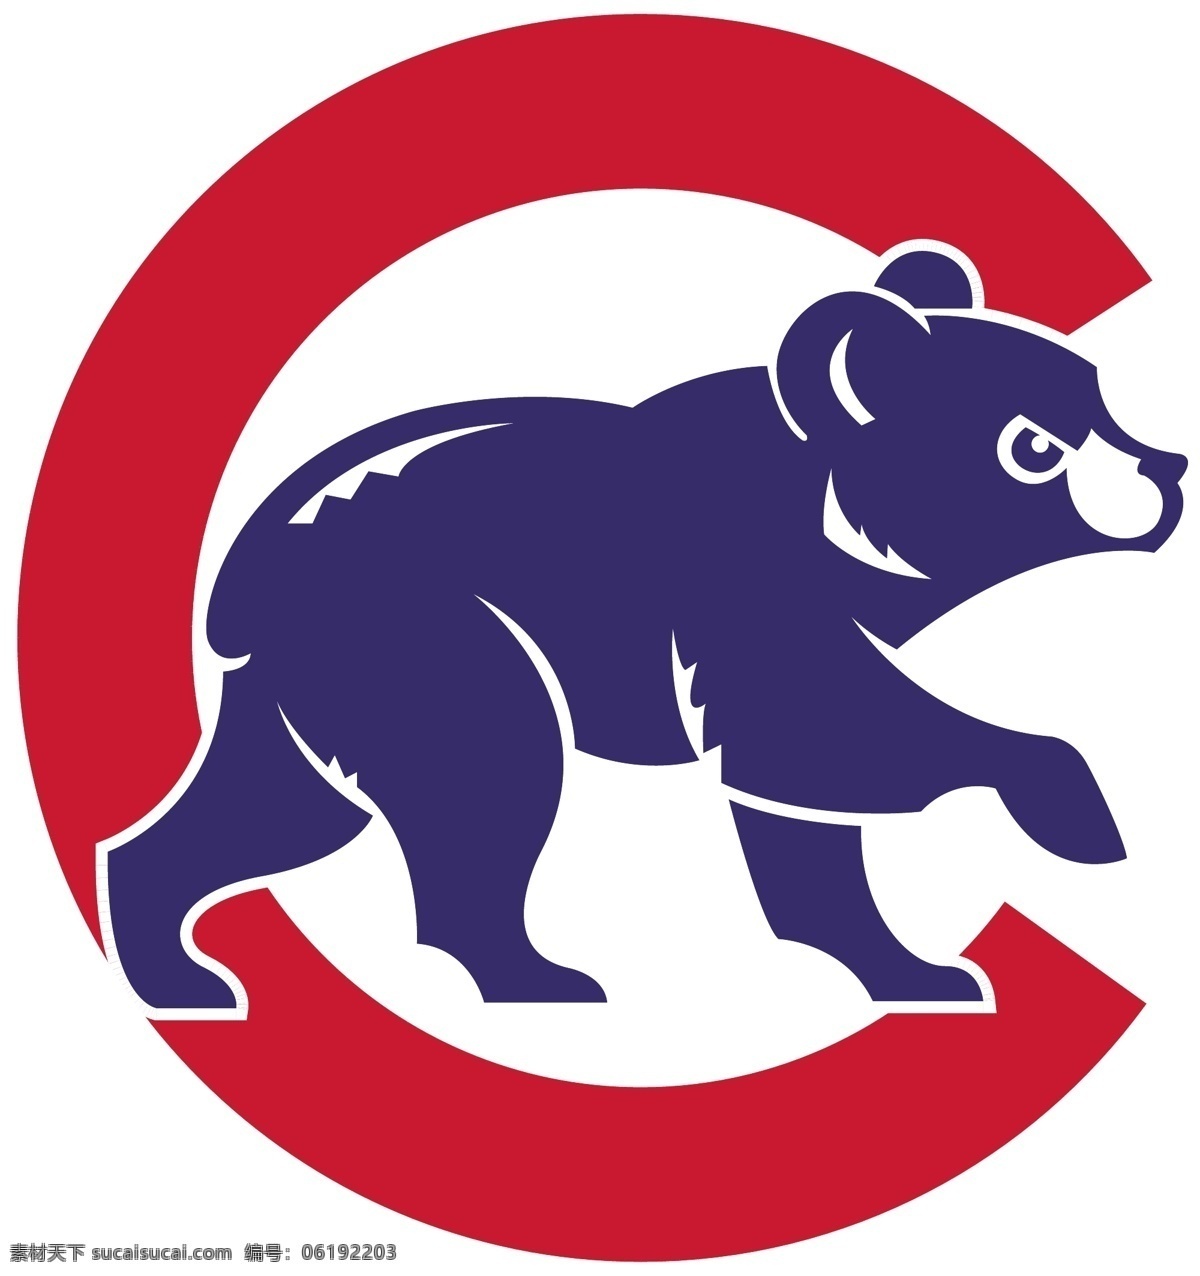 芝加哥 小 熊 队 mlb 小熊 小熊队 棒球大联盟 标志图标 企业 logo 标志